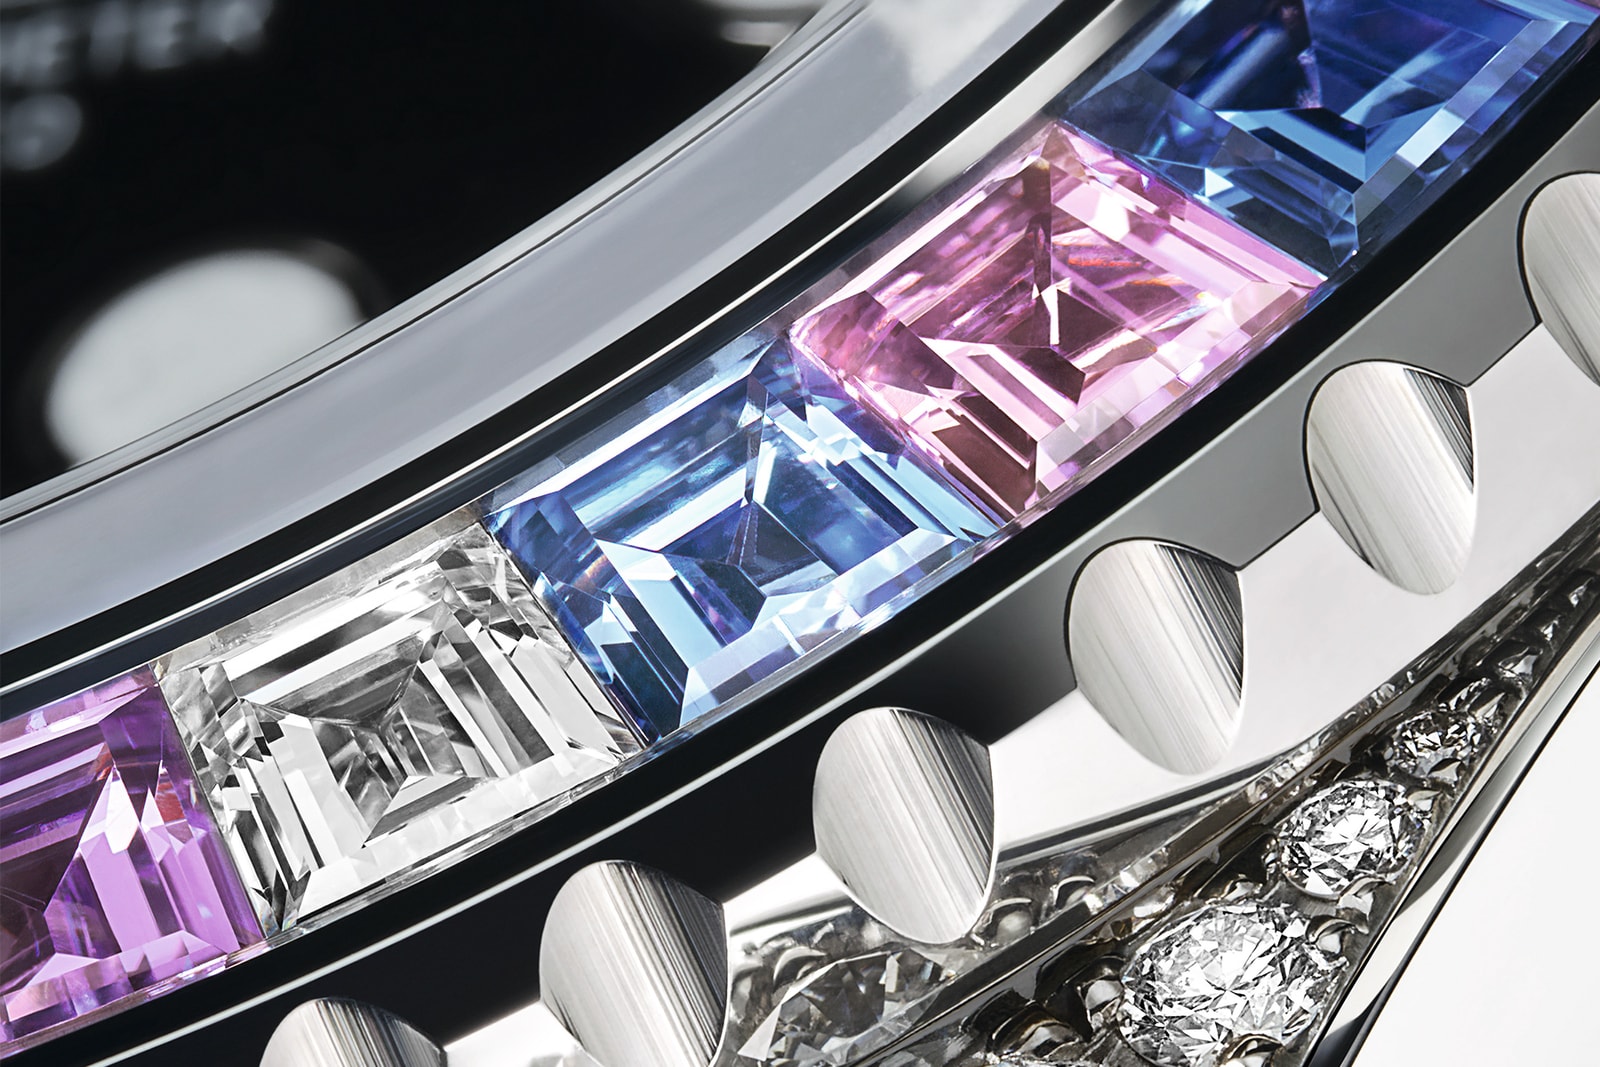 Rolex 2022 年全新錶款陣容正式登場